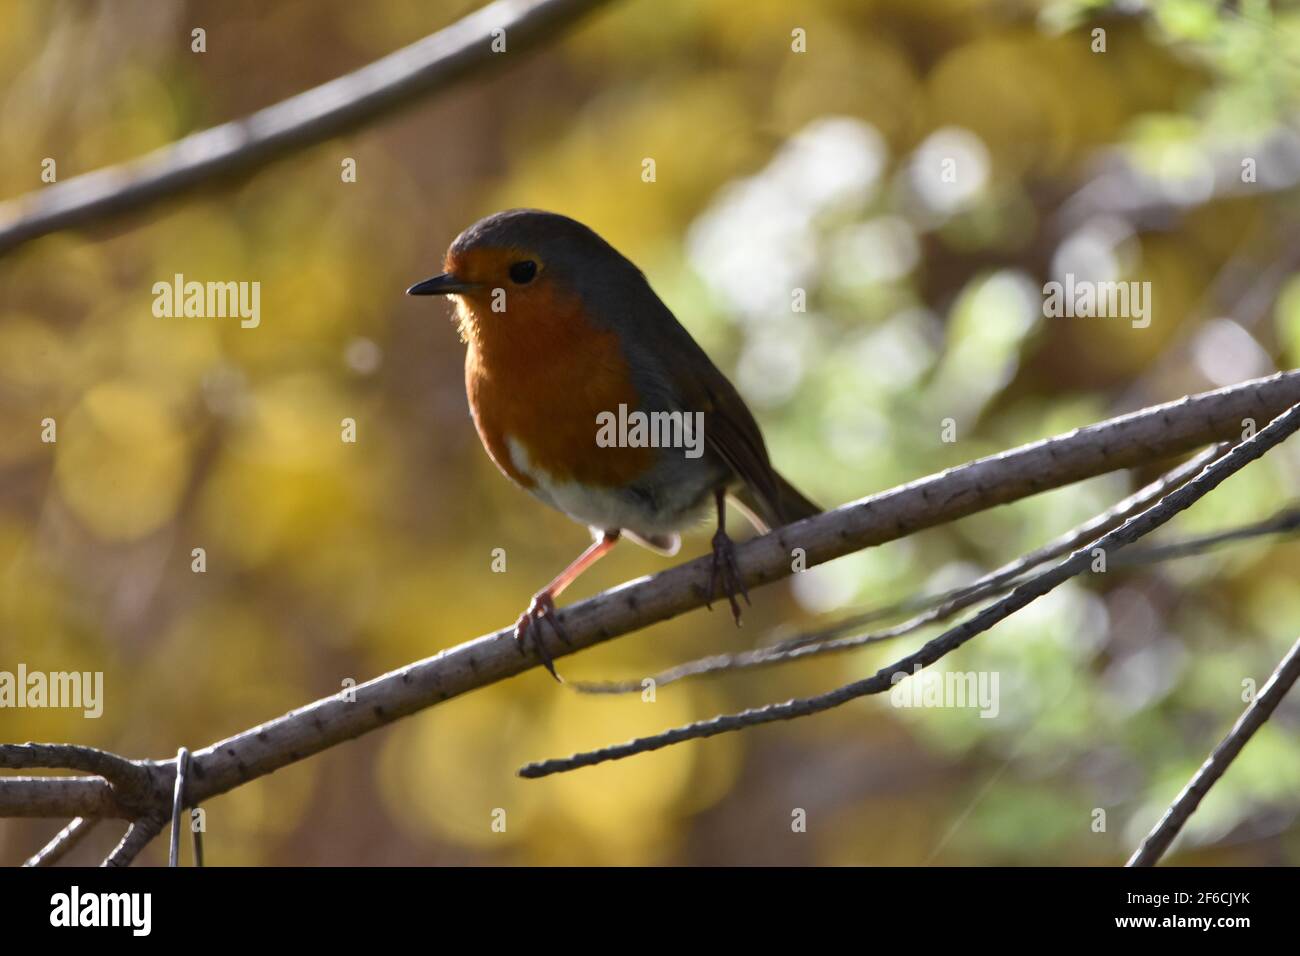 Un Robin perché sur une branche avec un beau bokeh arrière-plan Banque D'Images